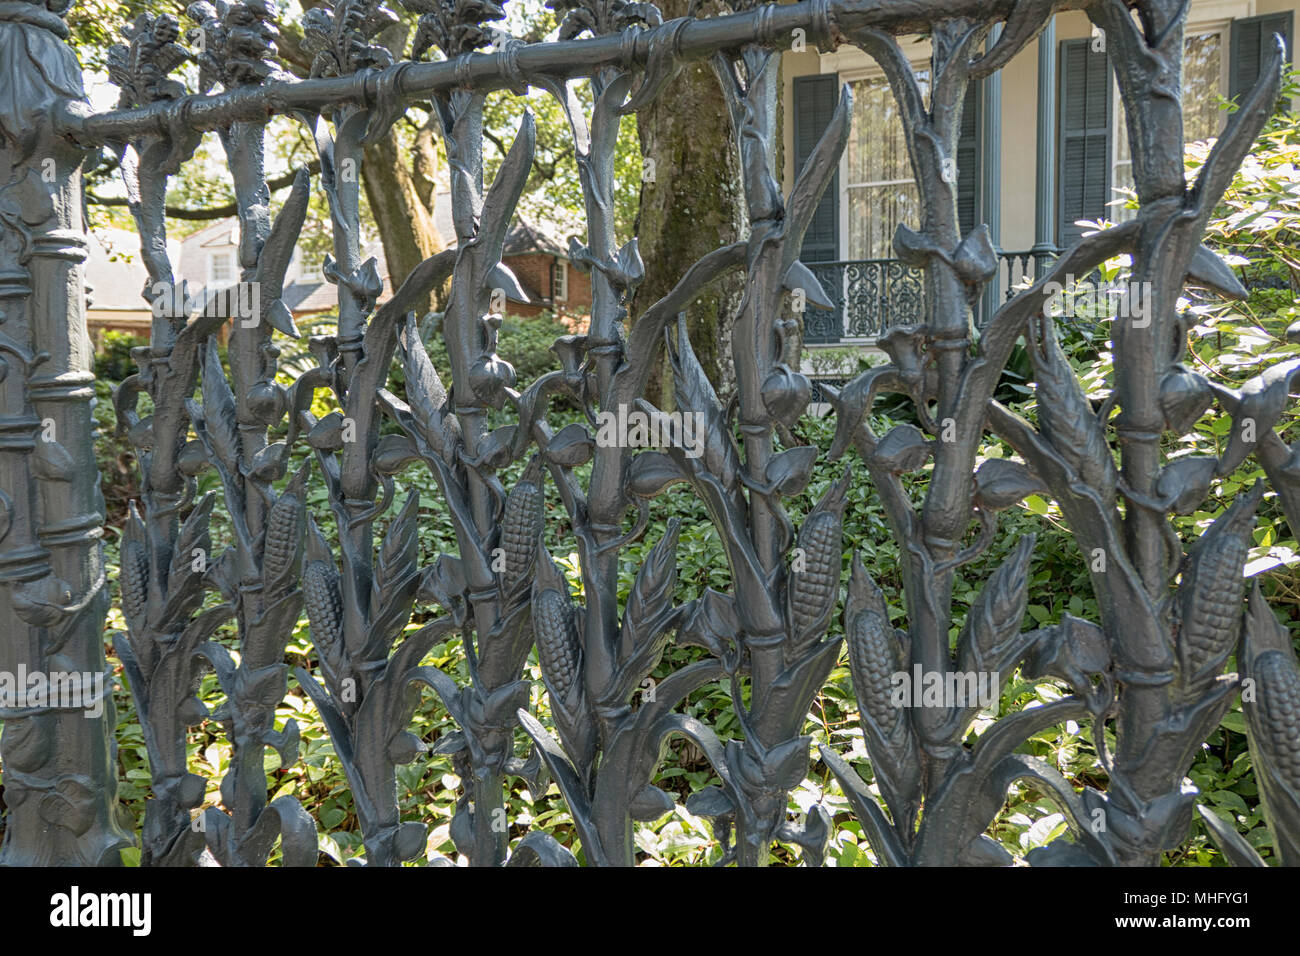 NEW ORLEANS, LA - April 25, 2018: Mais Gusseisen Zaun an der Colonel Kurzen Villa im Garden District von New Orleans. 1859 gebaut Stockfoto